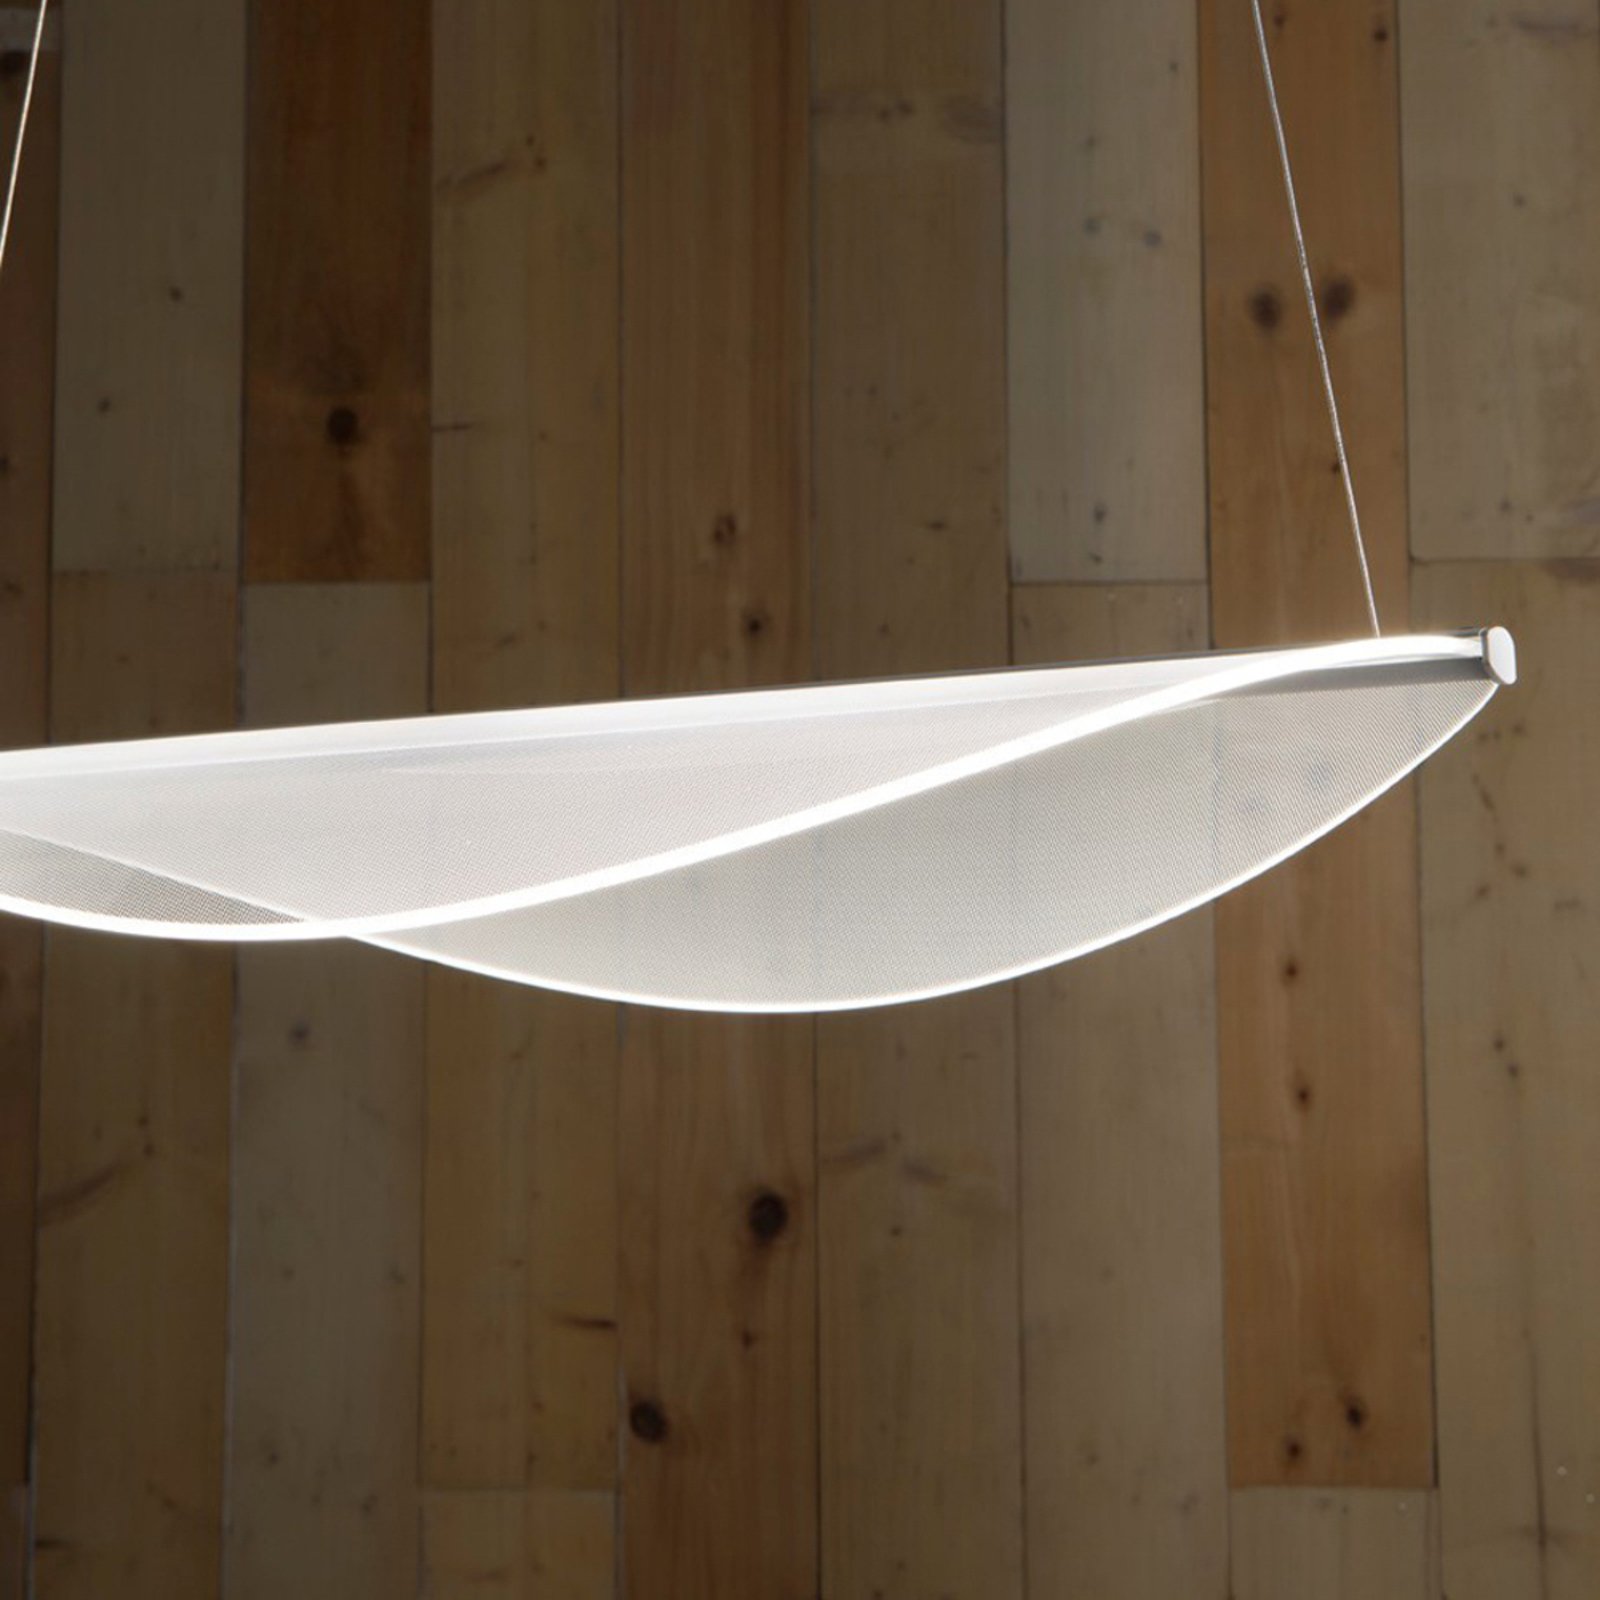 Stilnovo Diphy LED-pendellampe hvid længde 53,6 cm